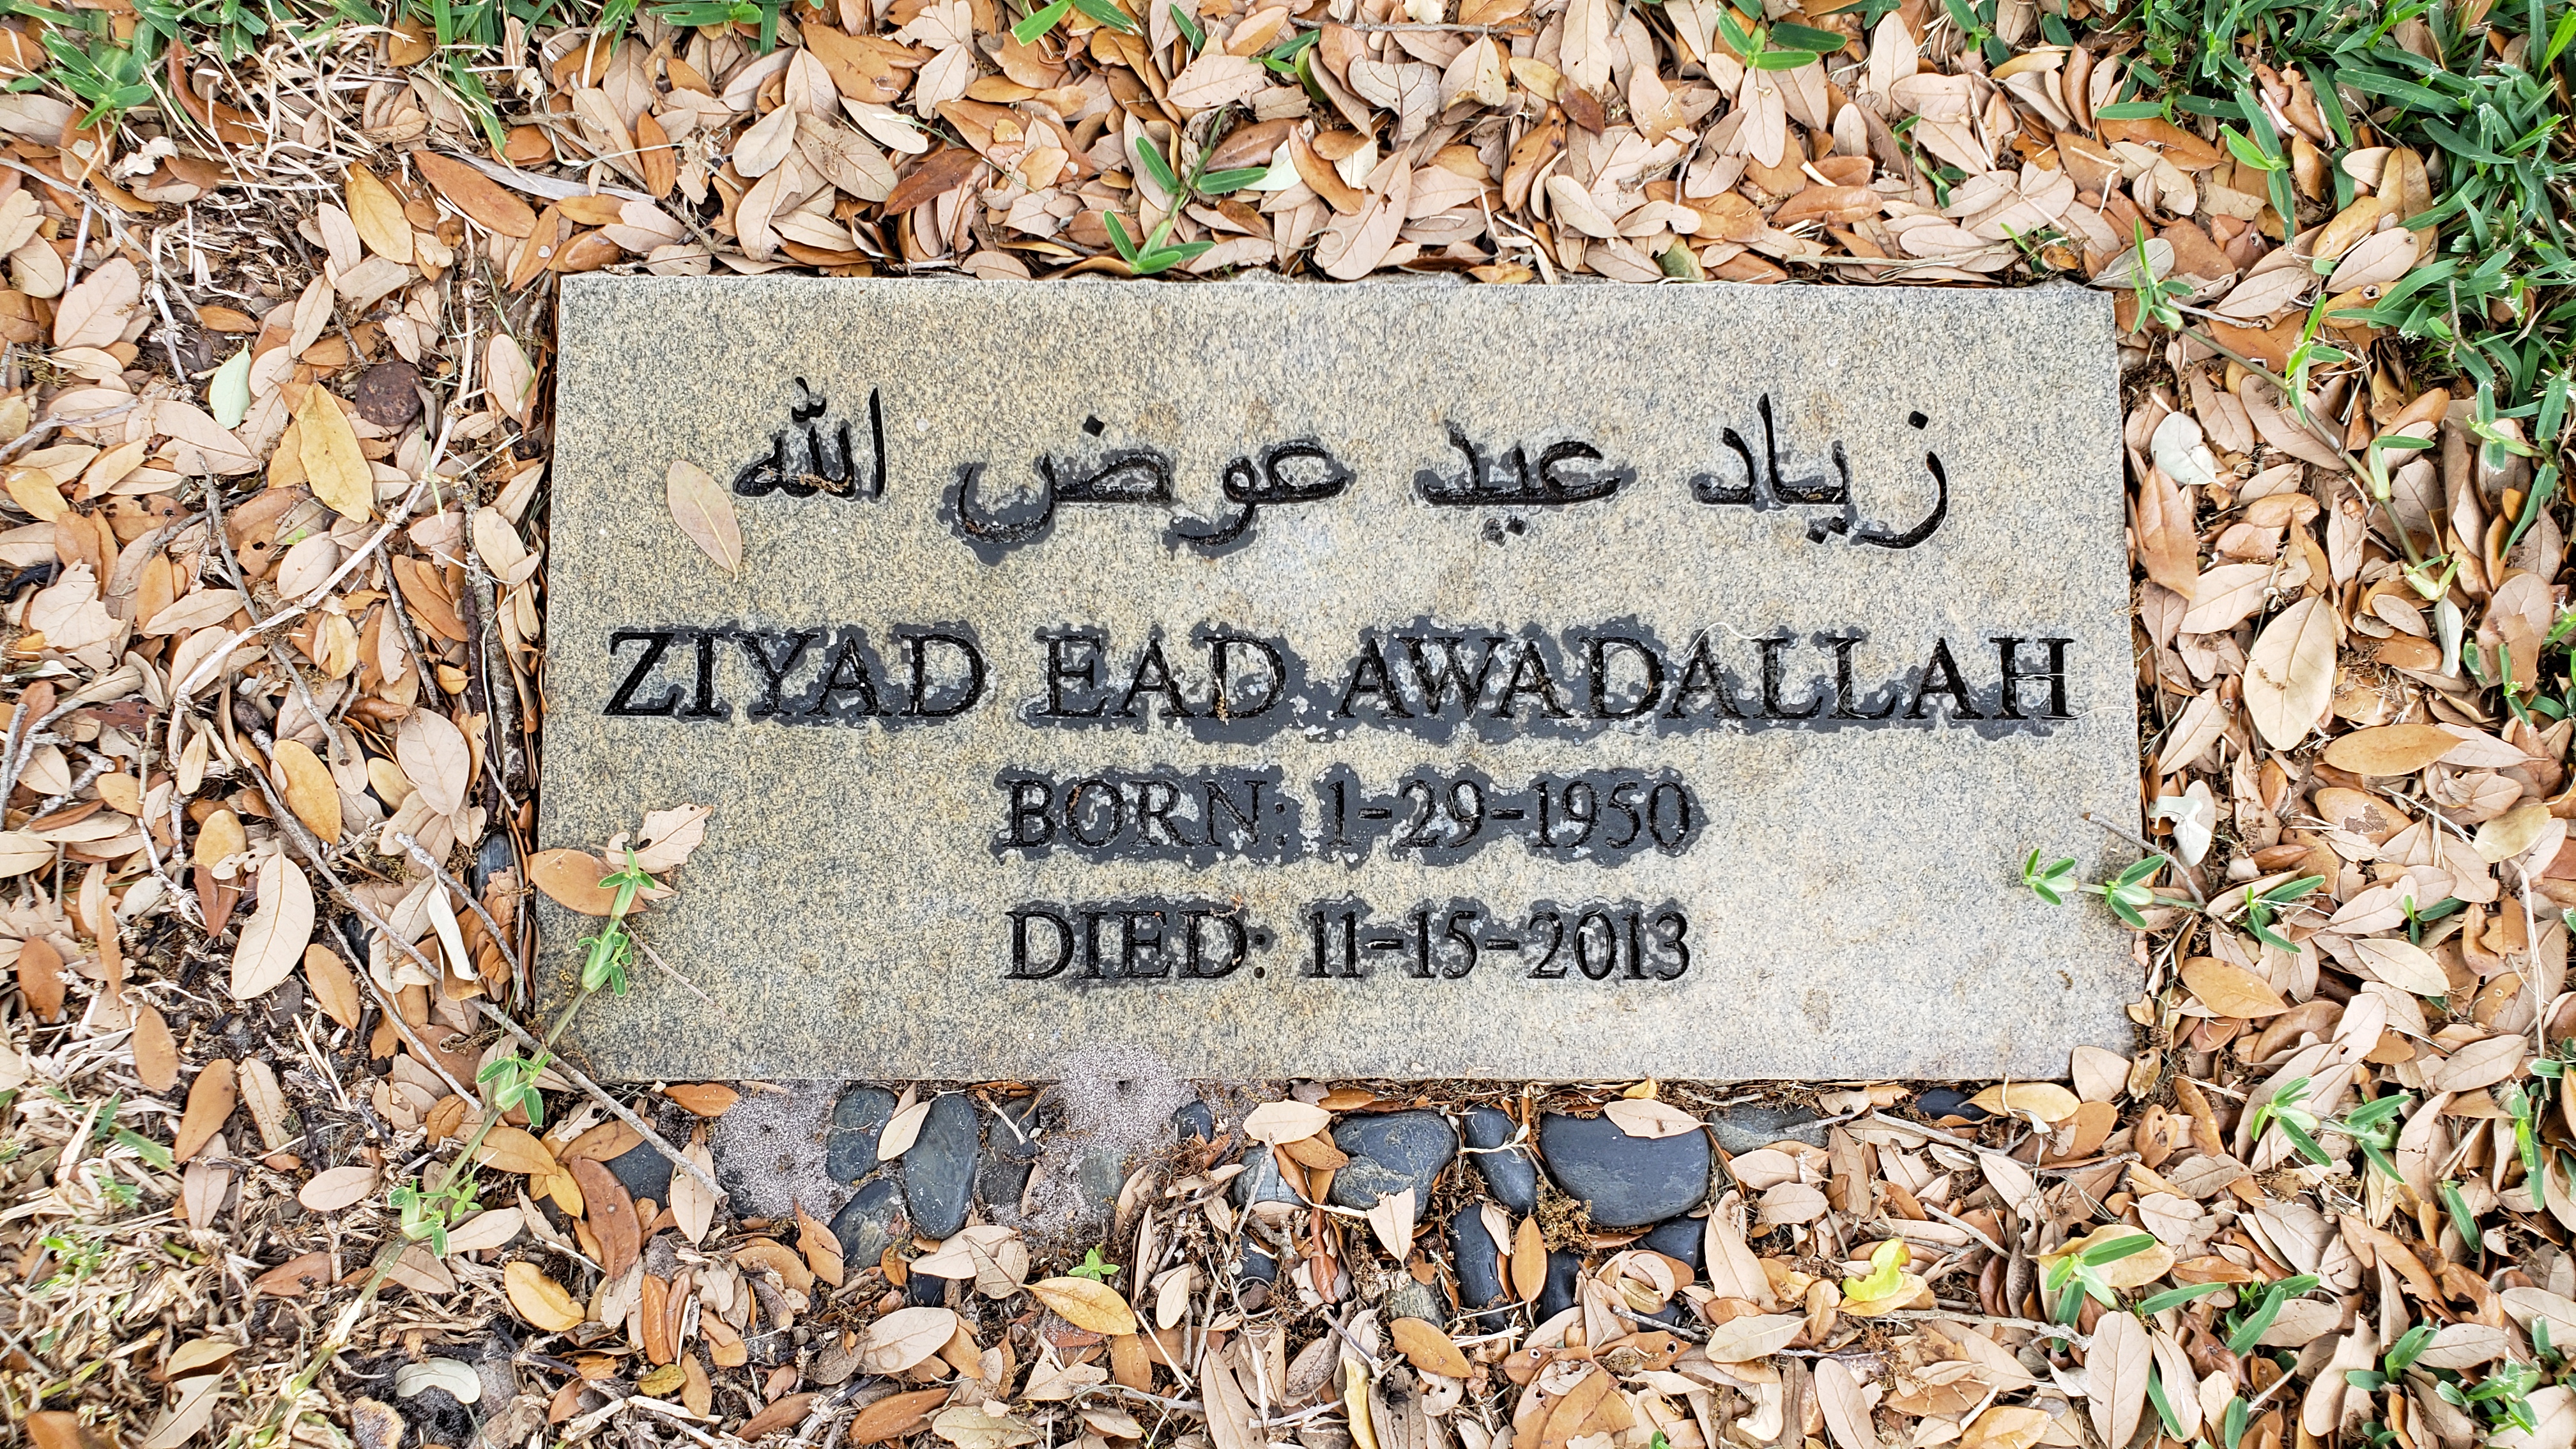 Ziyad Ead Awadallah